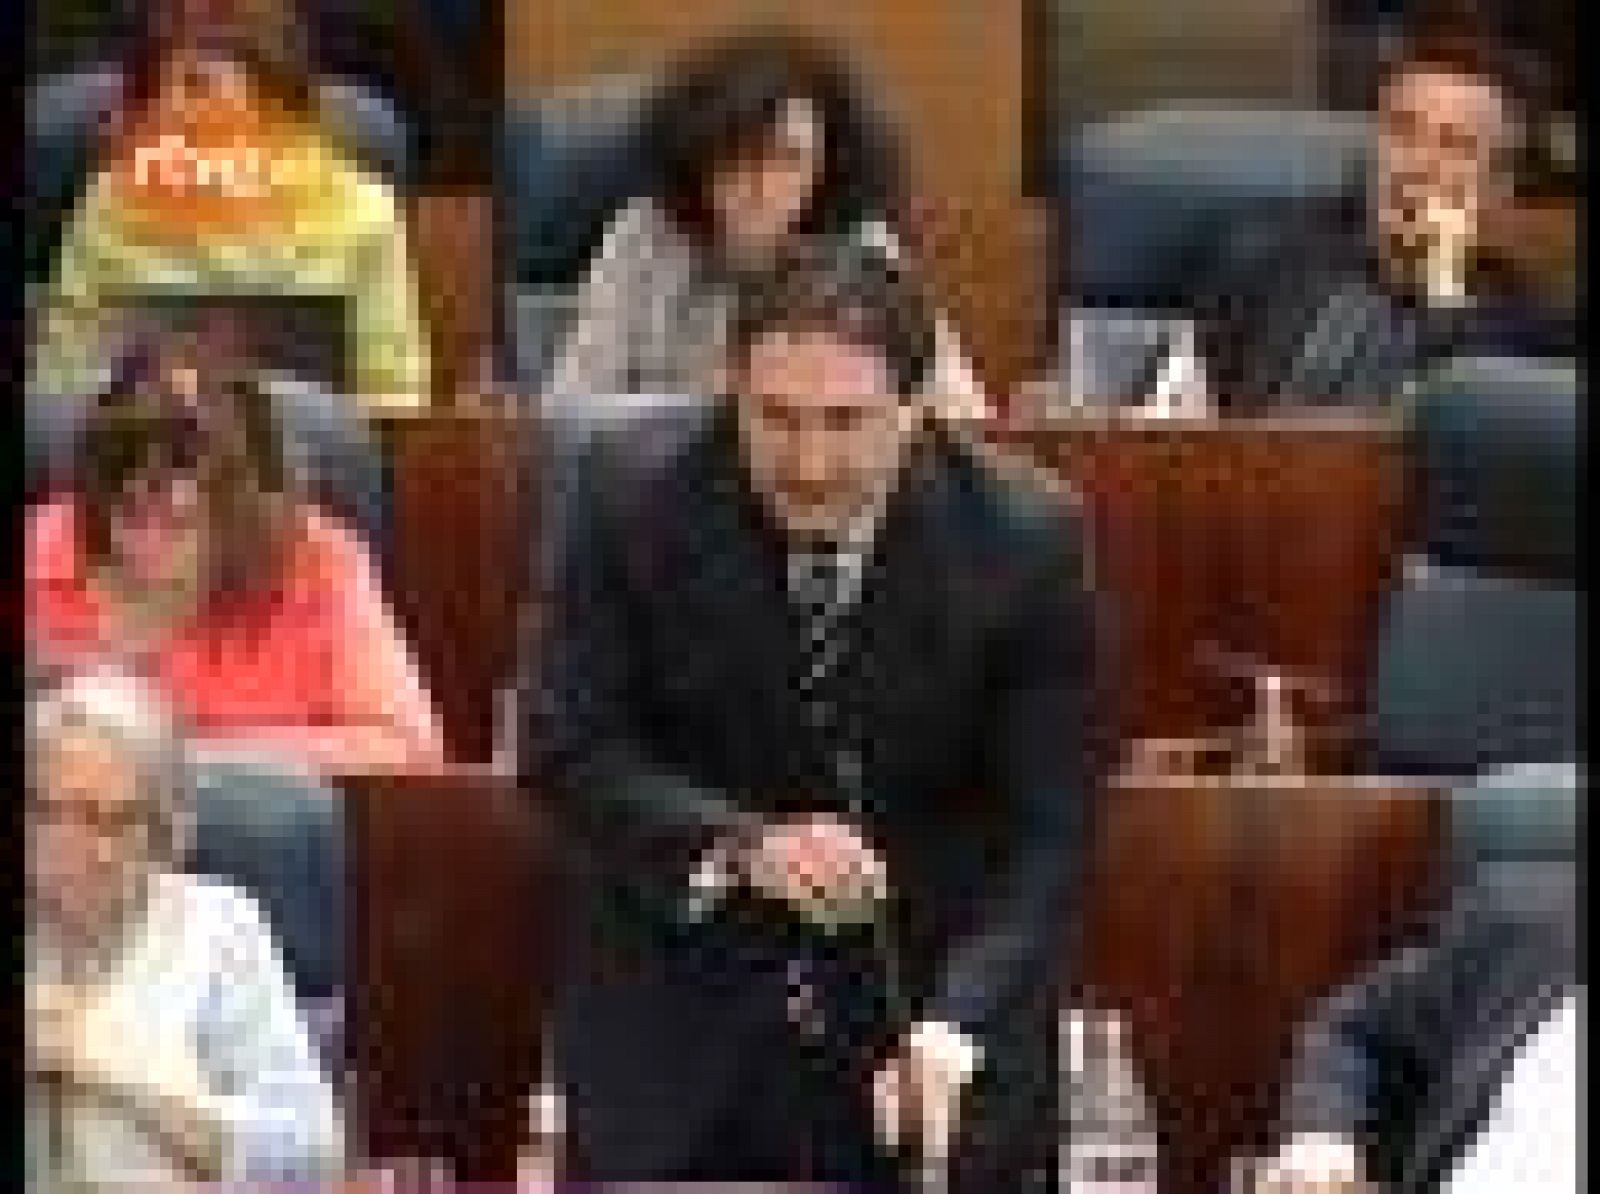 La presidenta de la Comunidad de Madrid ha bromeado al ser preguntada por el diputado socialista José Cepeda sobre si tendrá que pagar el nuevo impuesto que prepara el Gobierno para las rentas que superan el millón de euros.